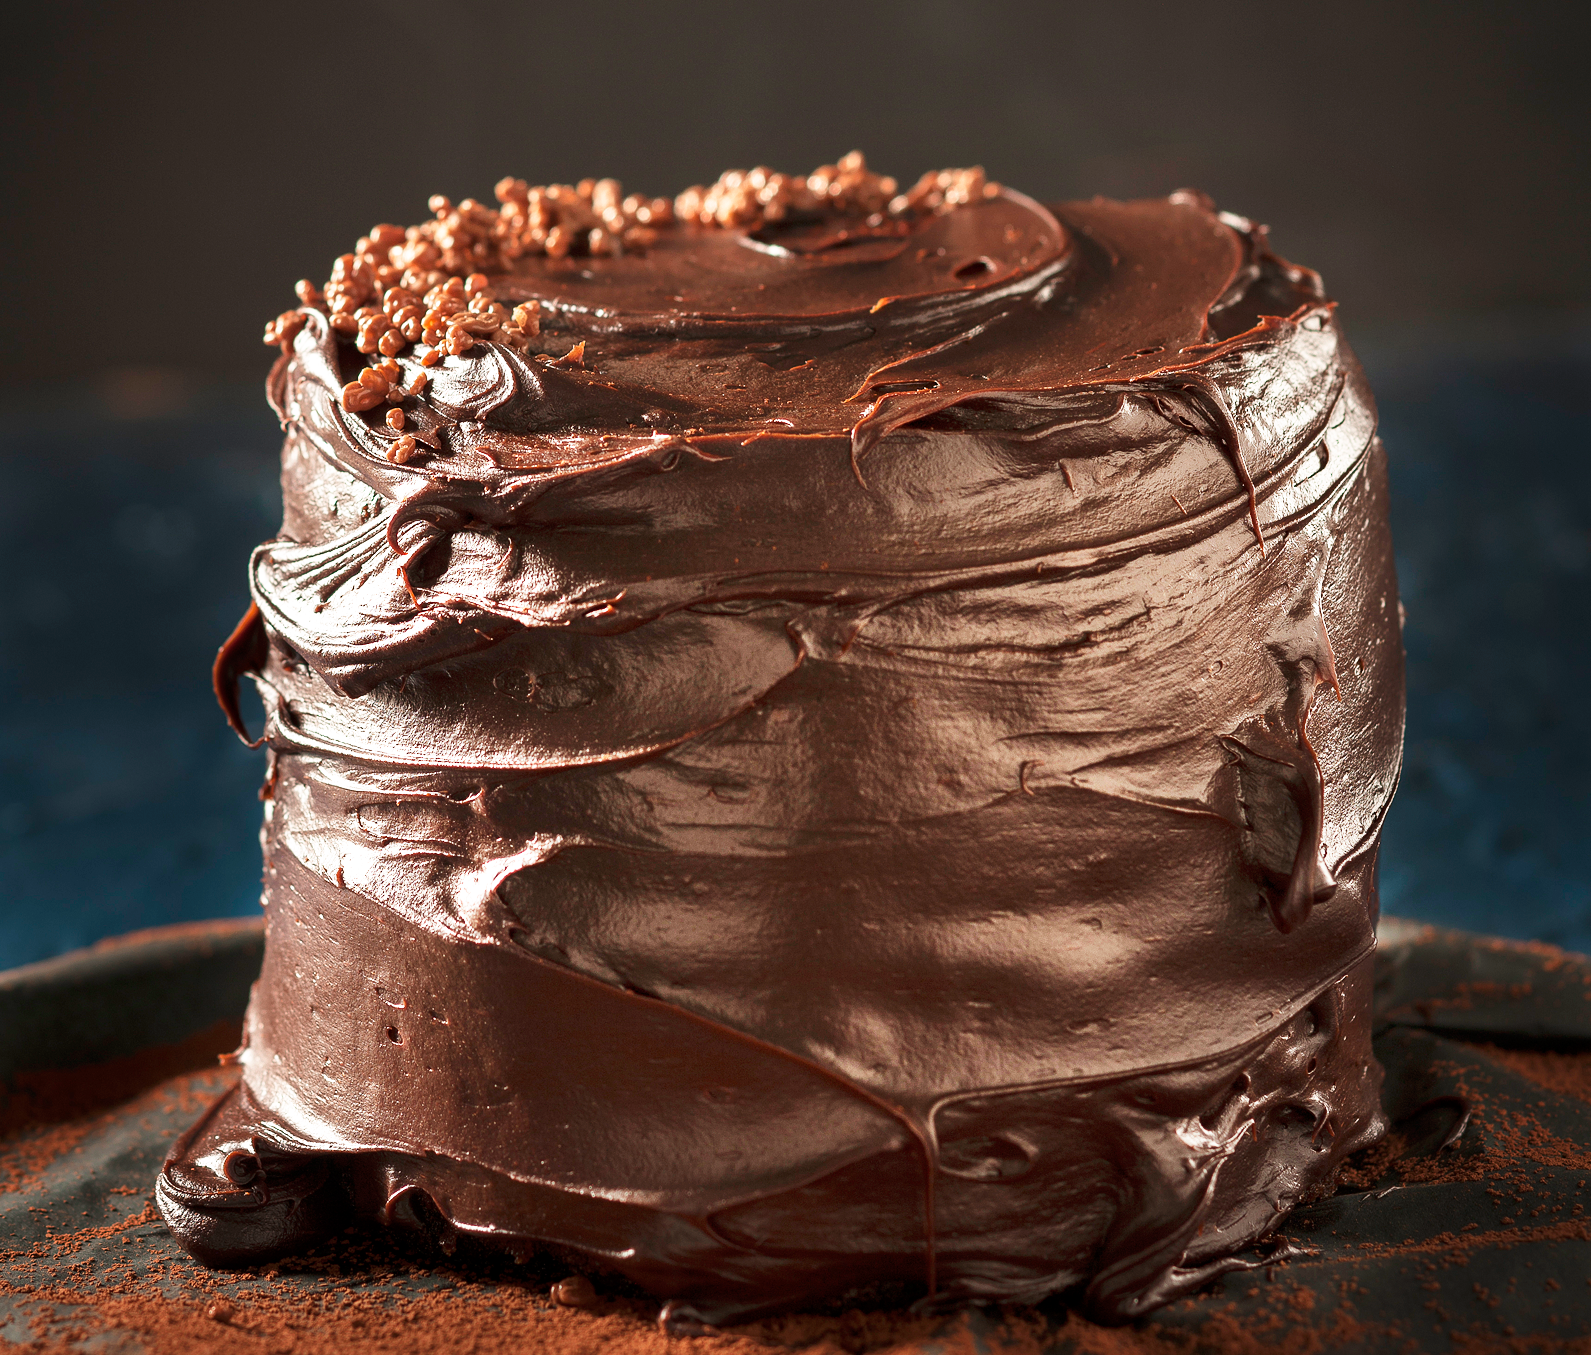 A triple-chocolate cake? 